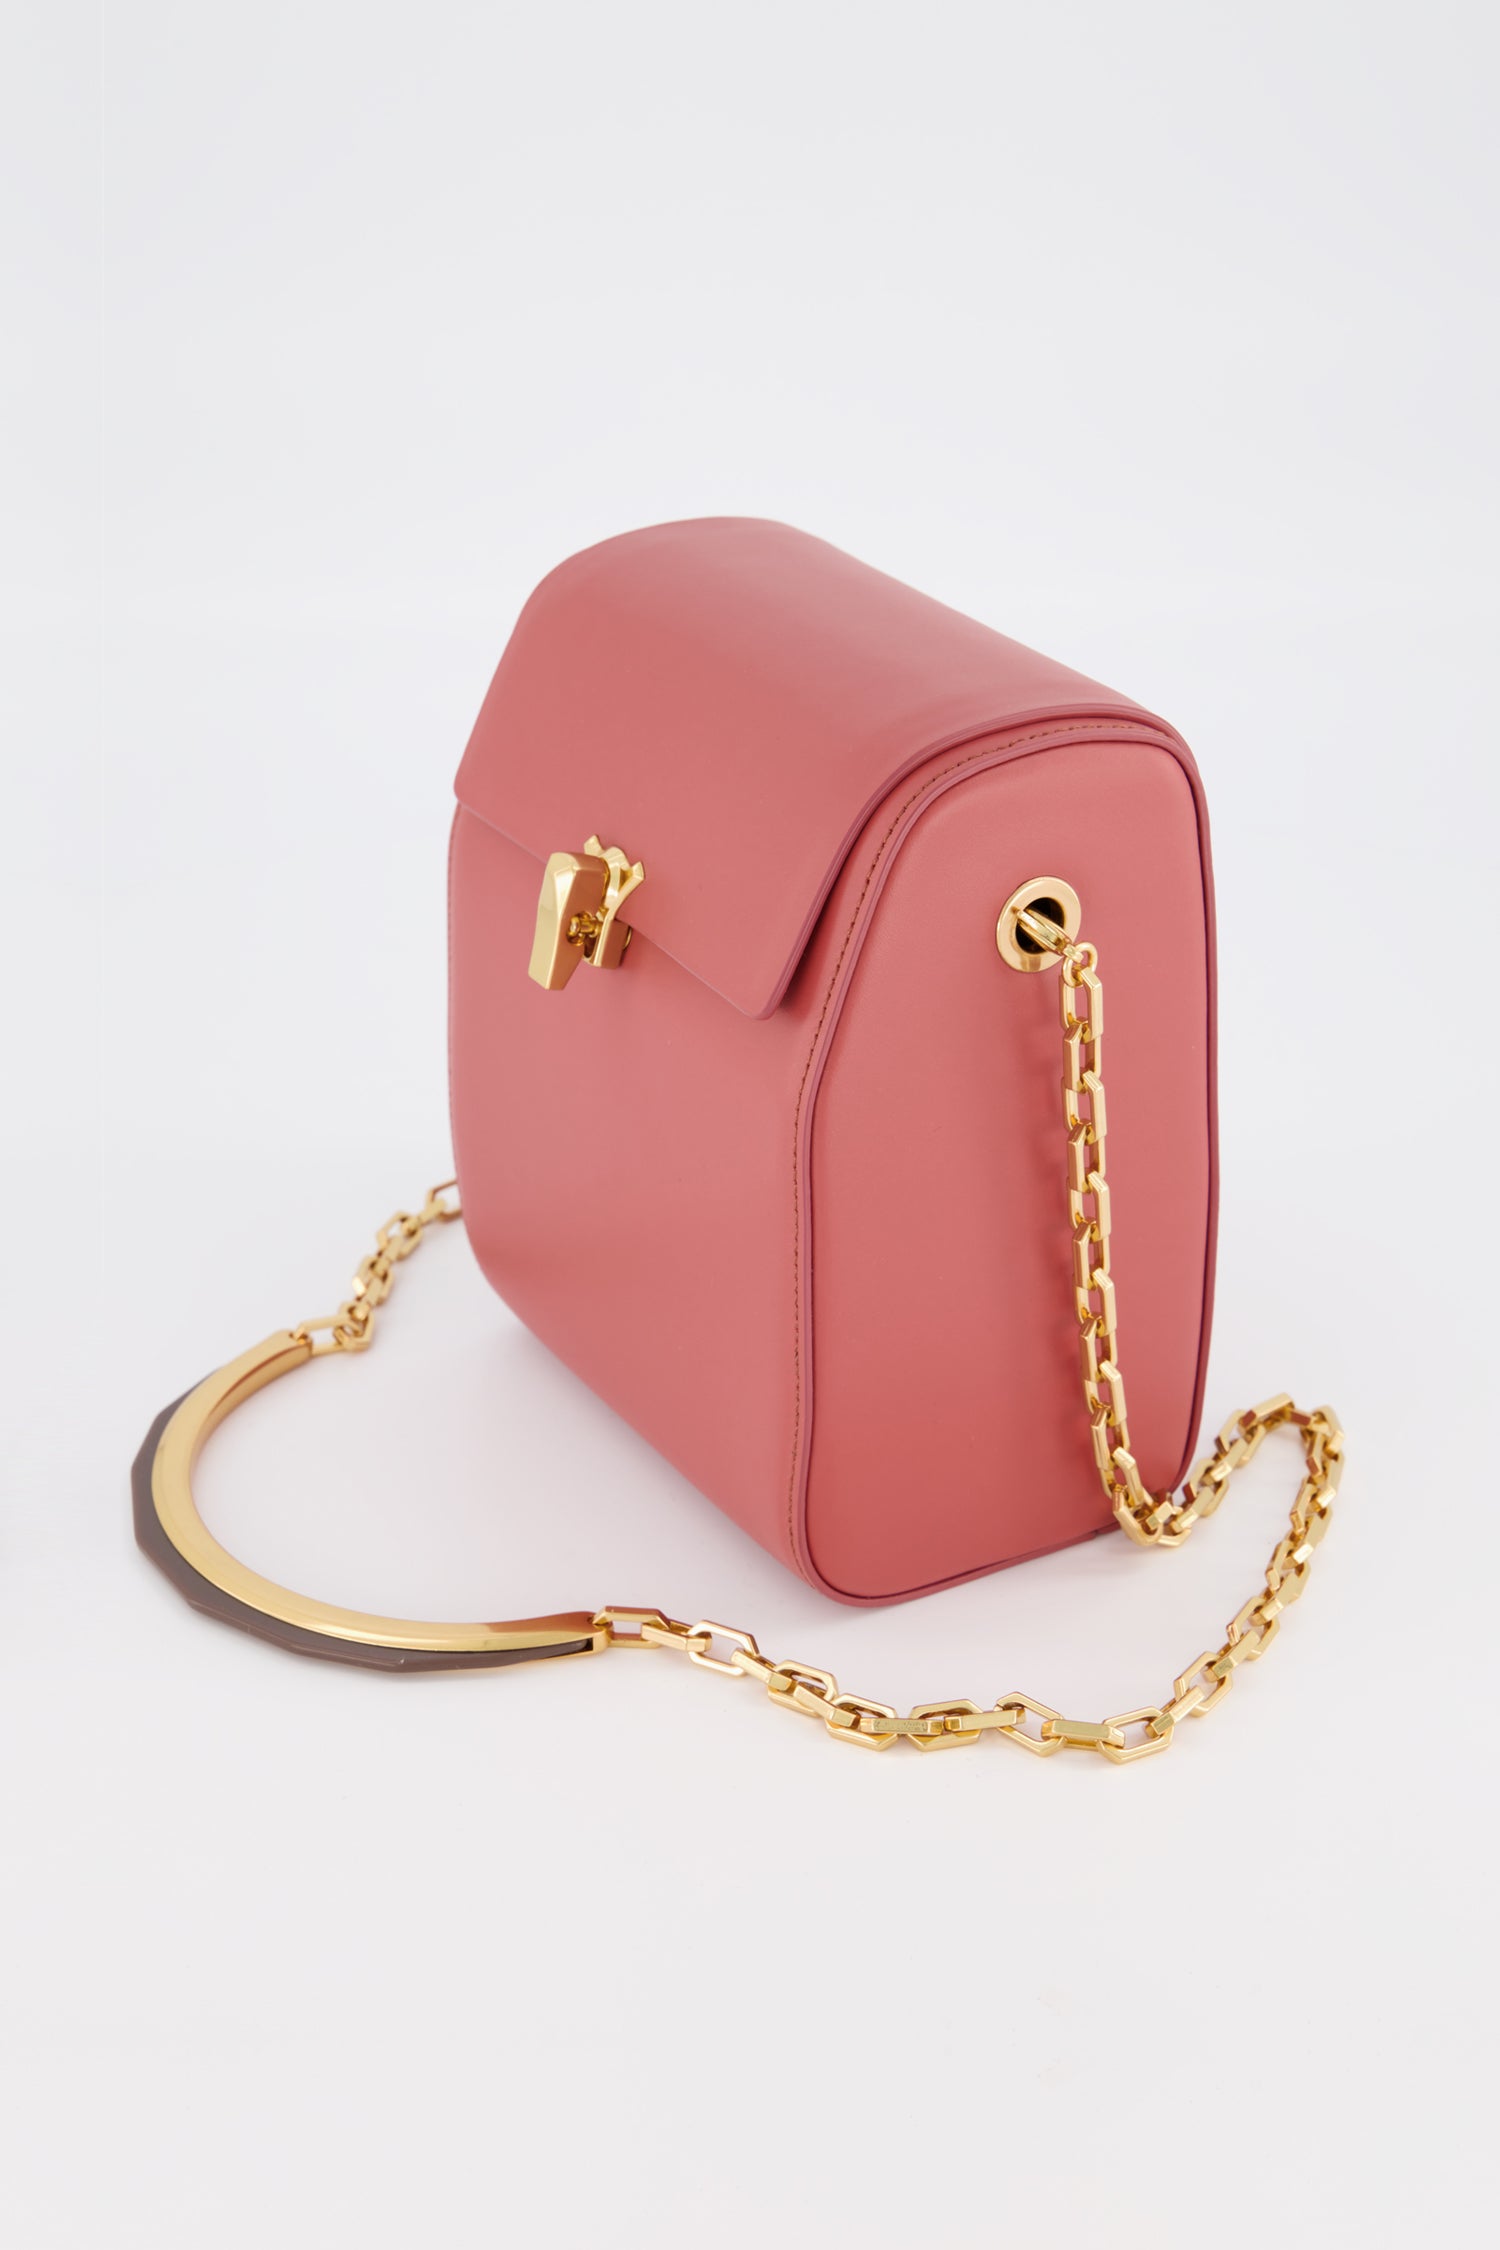 The Volon Pink PO Box Bag